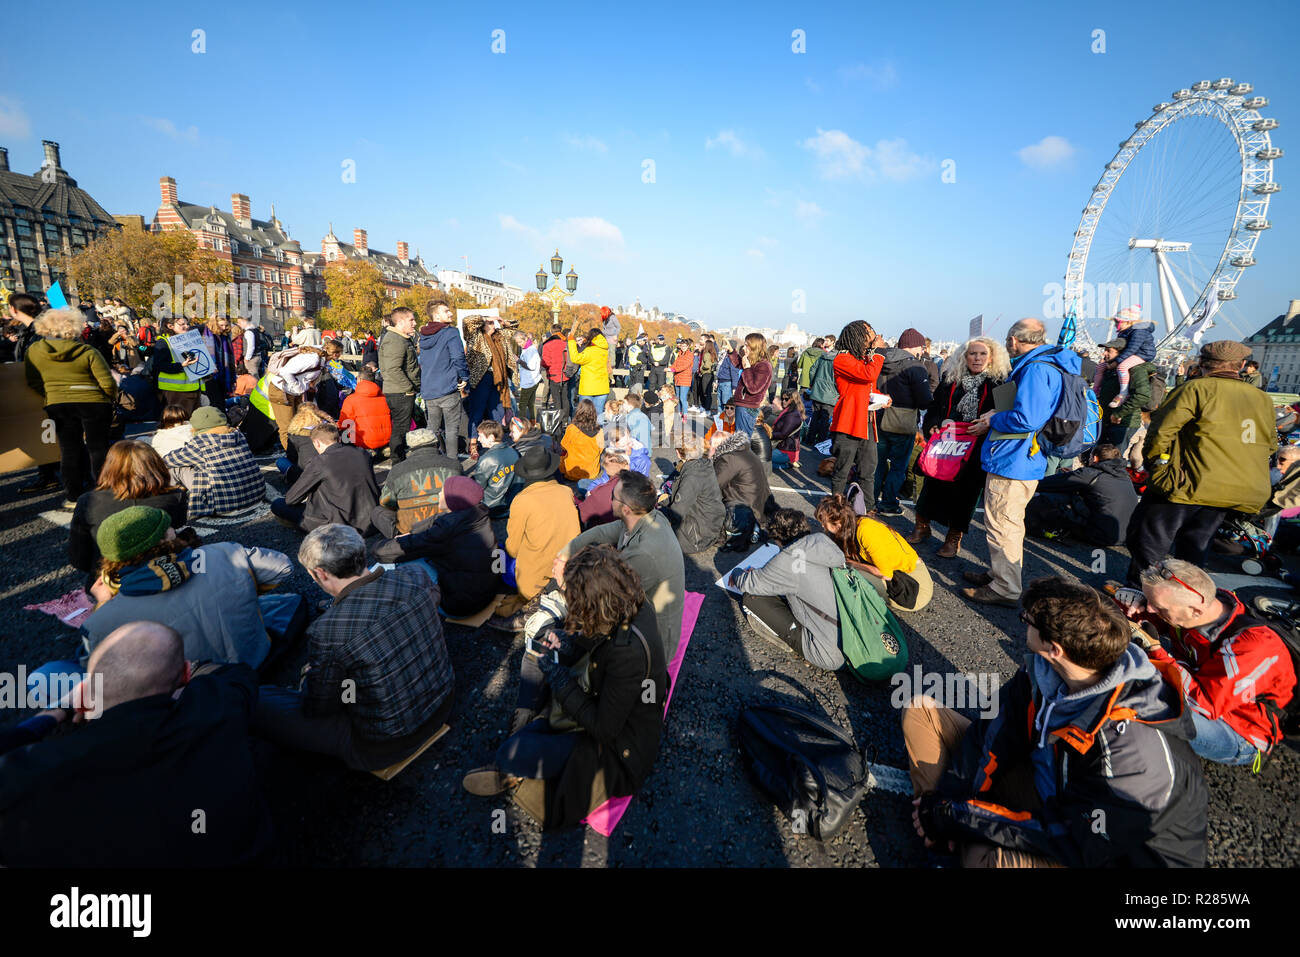 Die Westminster Bridge, London, UK. Organisiert vom Aussterben Rebellion, ein Protest ist unterwegs zu 'Rebel gegen die britische Regierung für strafrechtliche Untätigkeit im Angesicht des Klimawandels Katastrophe und ökologischen Kollaps". Demonstranten blockieren die Themse von Westminster, Waterloo, Southwark, Blackfriars und Lambeth damit zu unterbrechen. Stockfoto